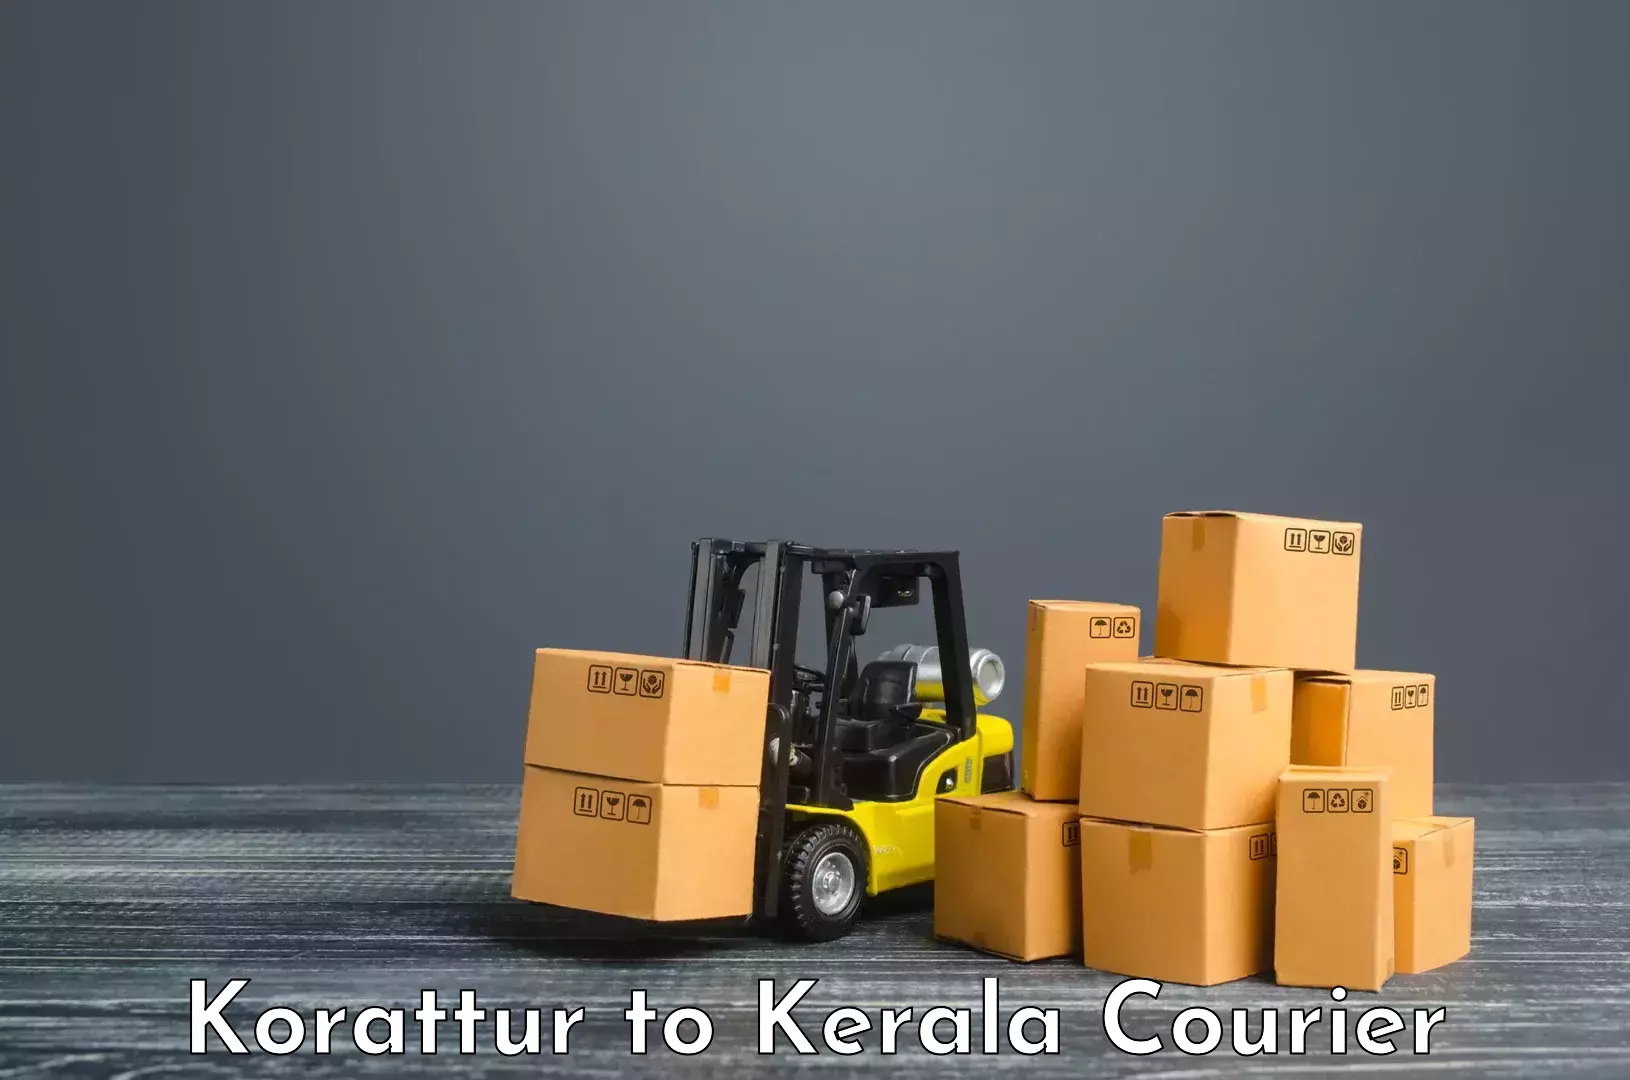 Courier service comparison Korattur to Thiruvananthapuram